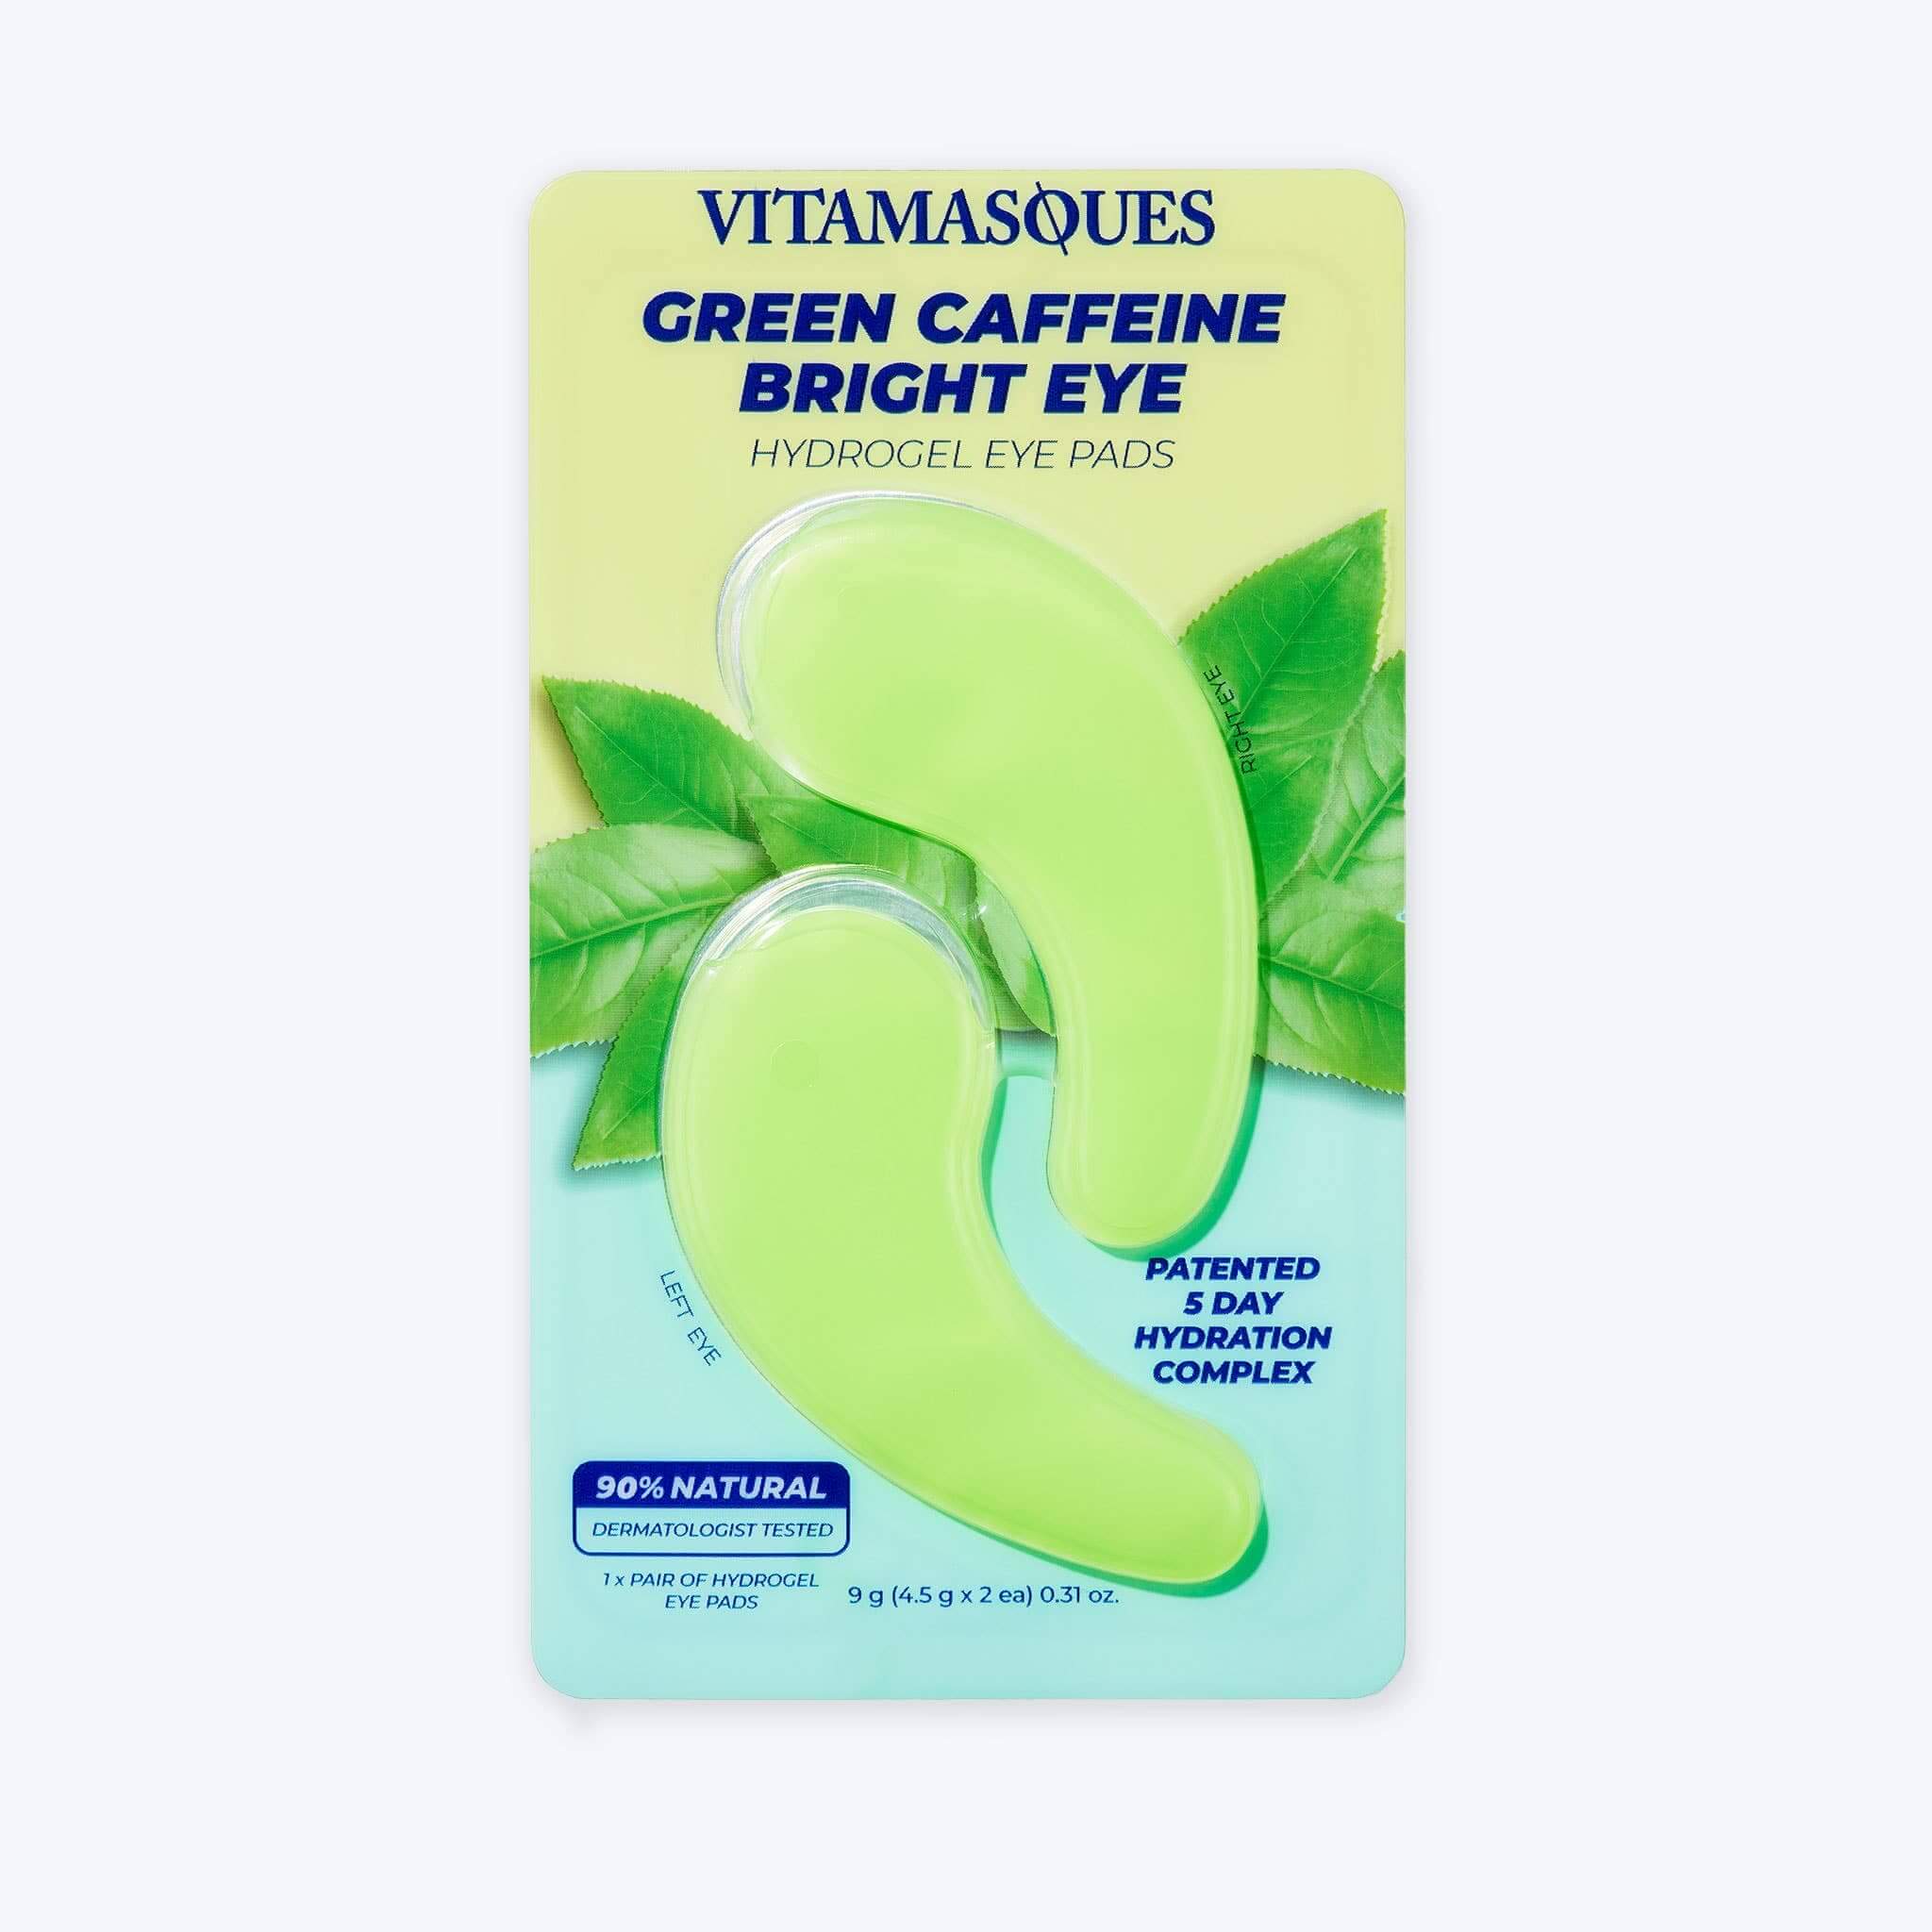 Vitamasques Bright Eye Green Caffeine Hydrogel Eye Pads